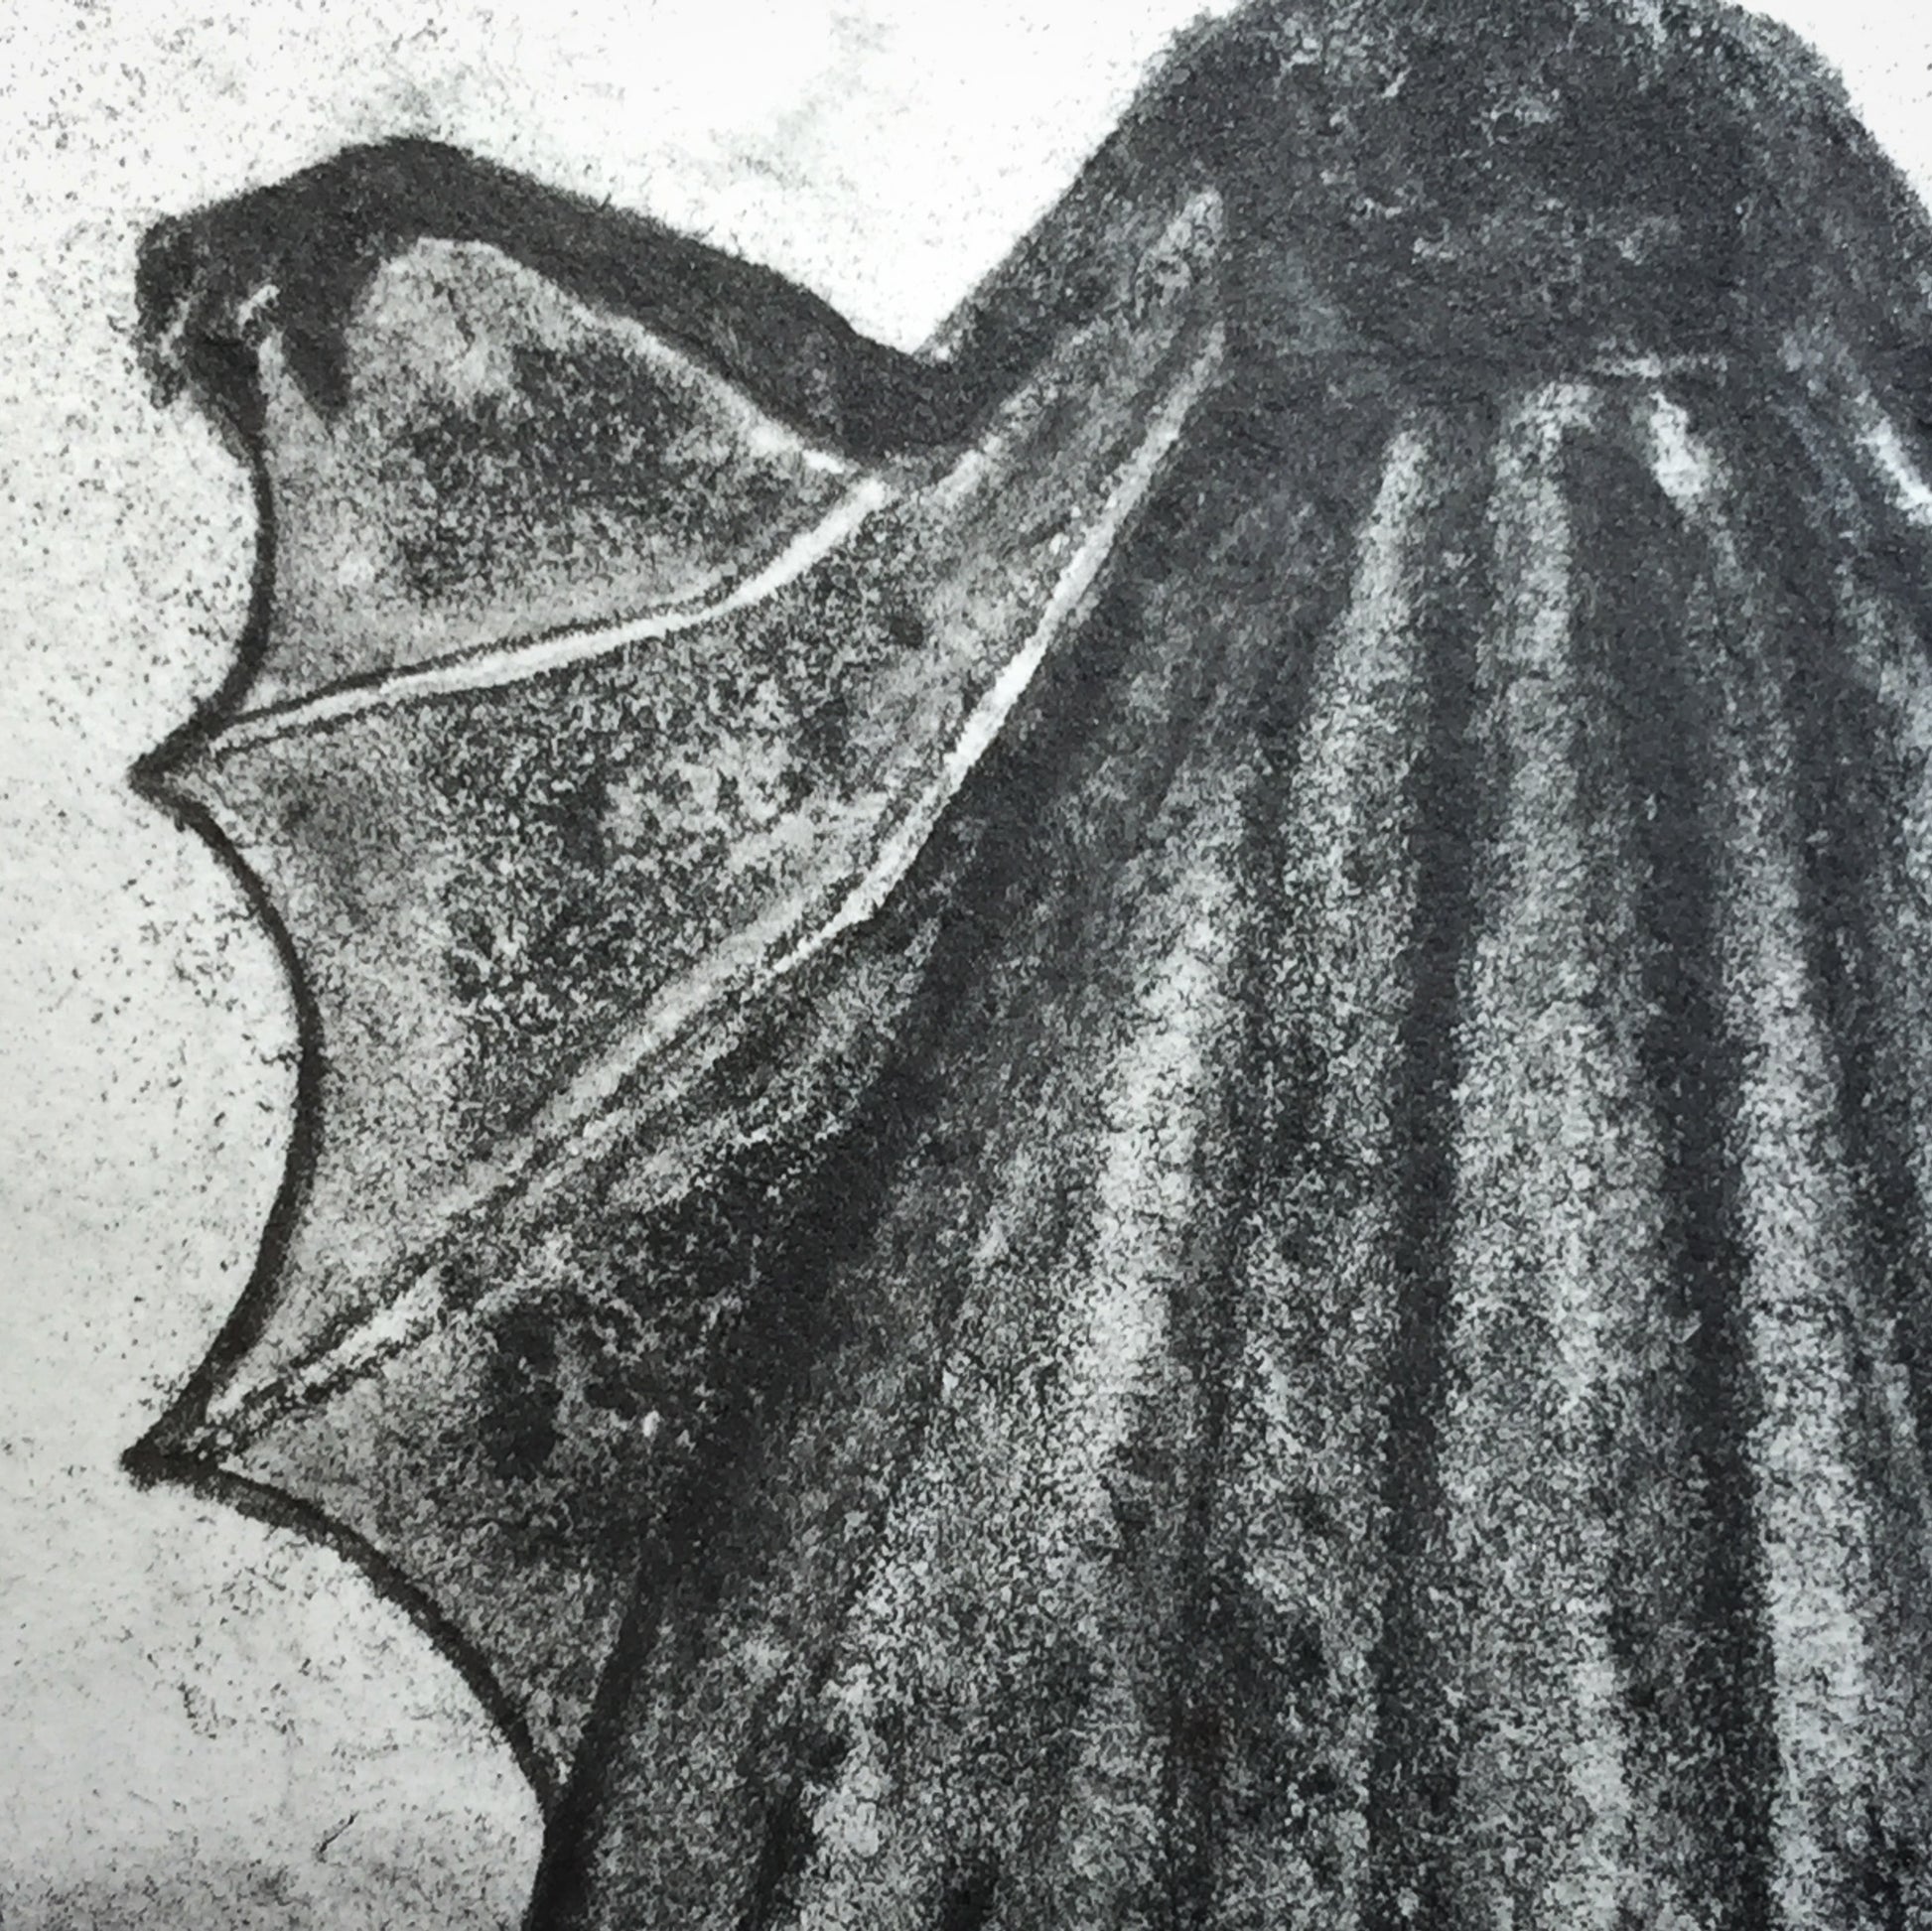 Darknita Danita Monster Creature Vampire Watercolor Graphite Pencil Drawing ACEO Card Original Halloween Illustration